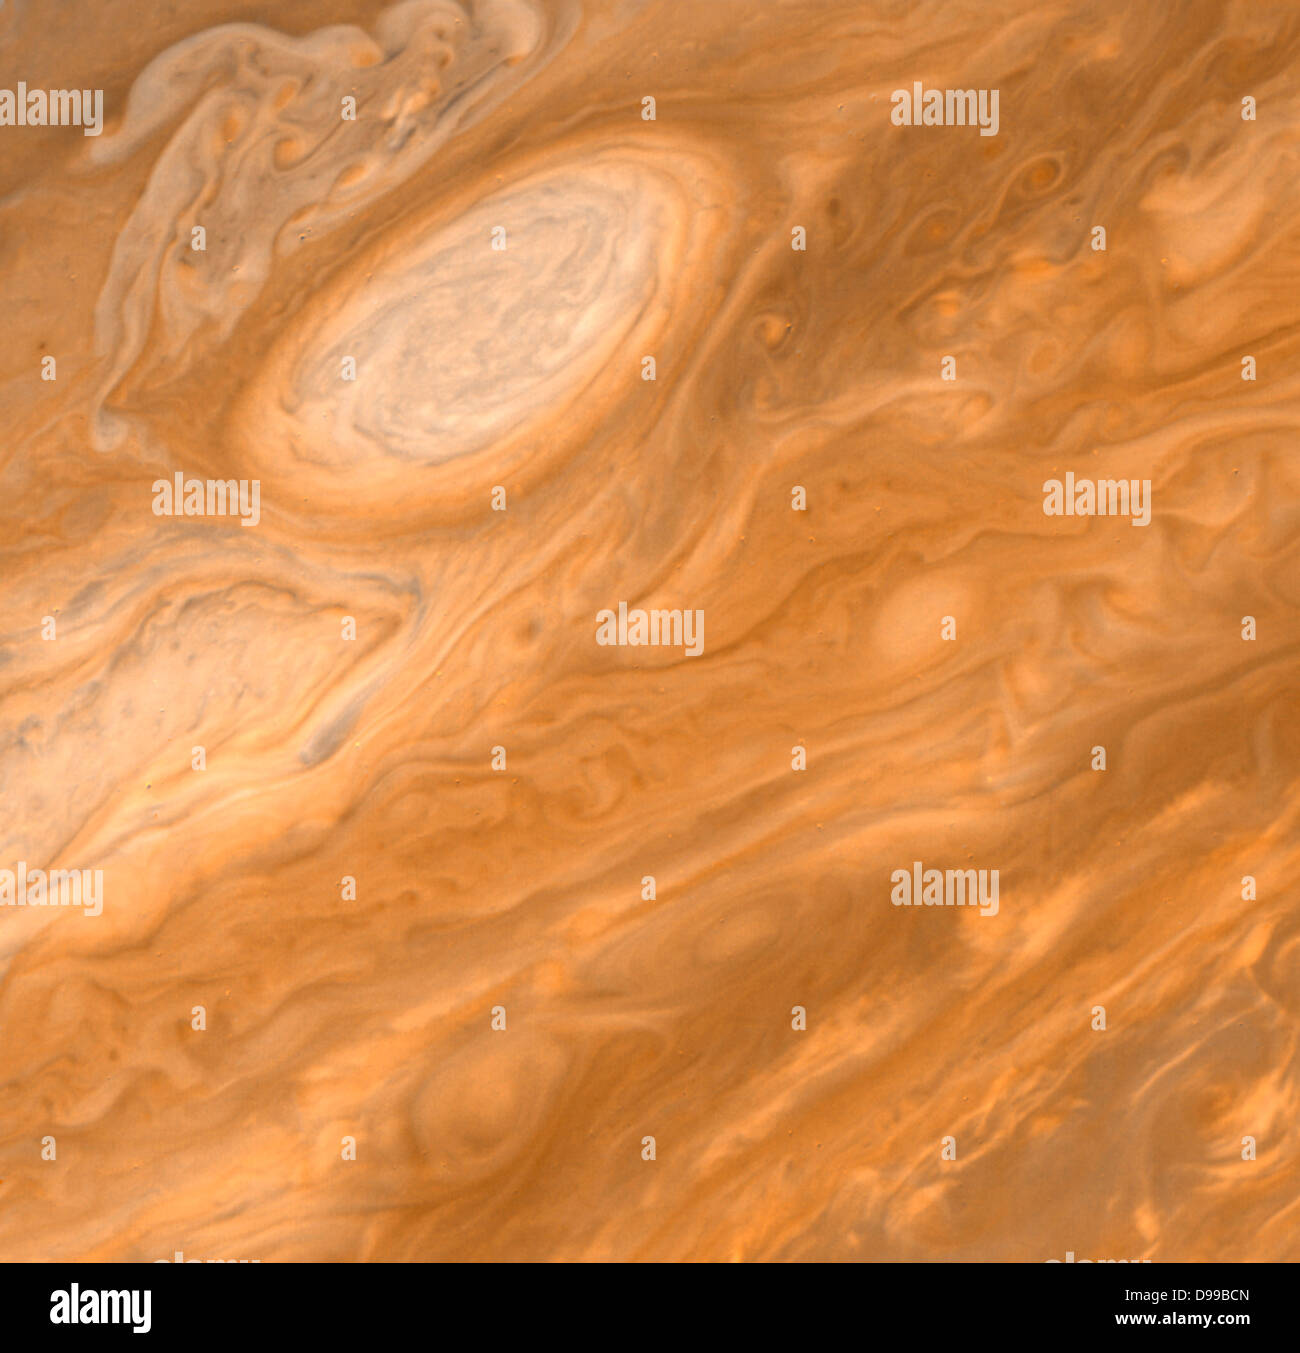 Questa immagine mostra uno dei longevi ovale bianco delle nuvole che hanno risieduto nell'Jovian emisfero sud per quasi quarant'anni. Foto Stock